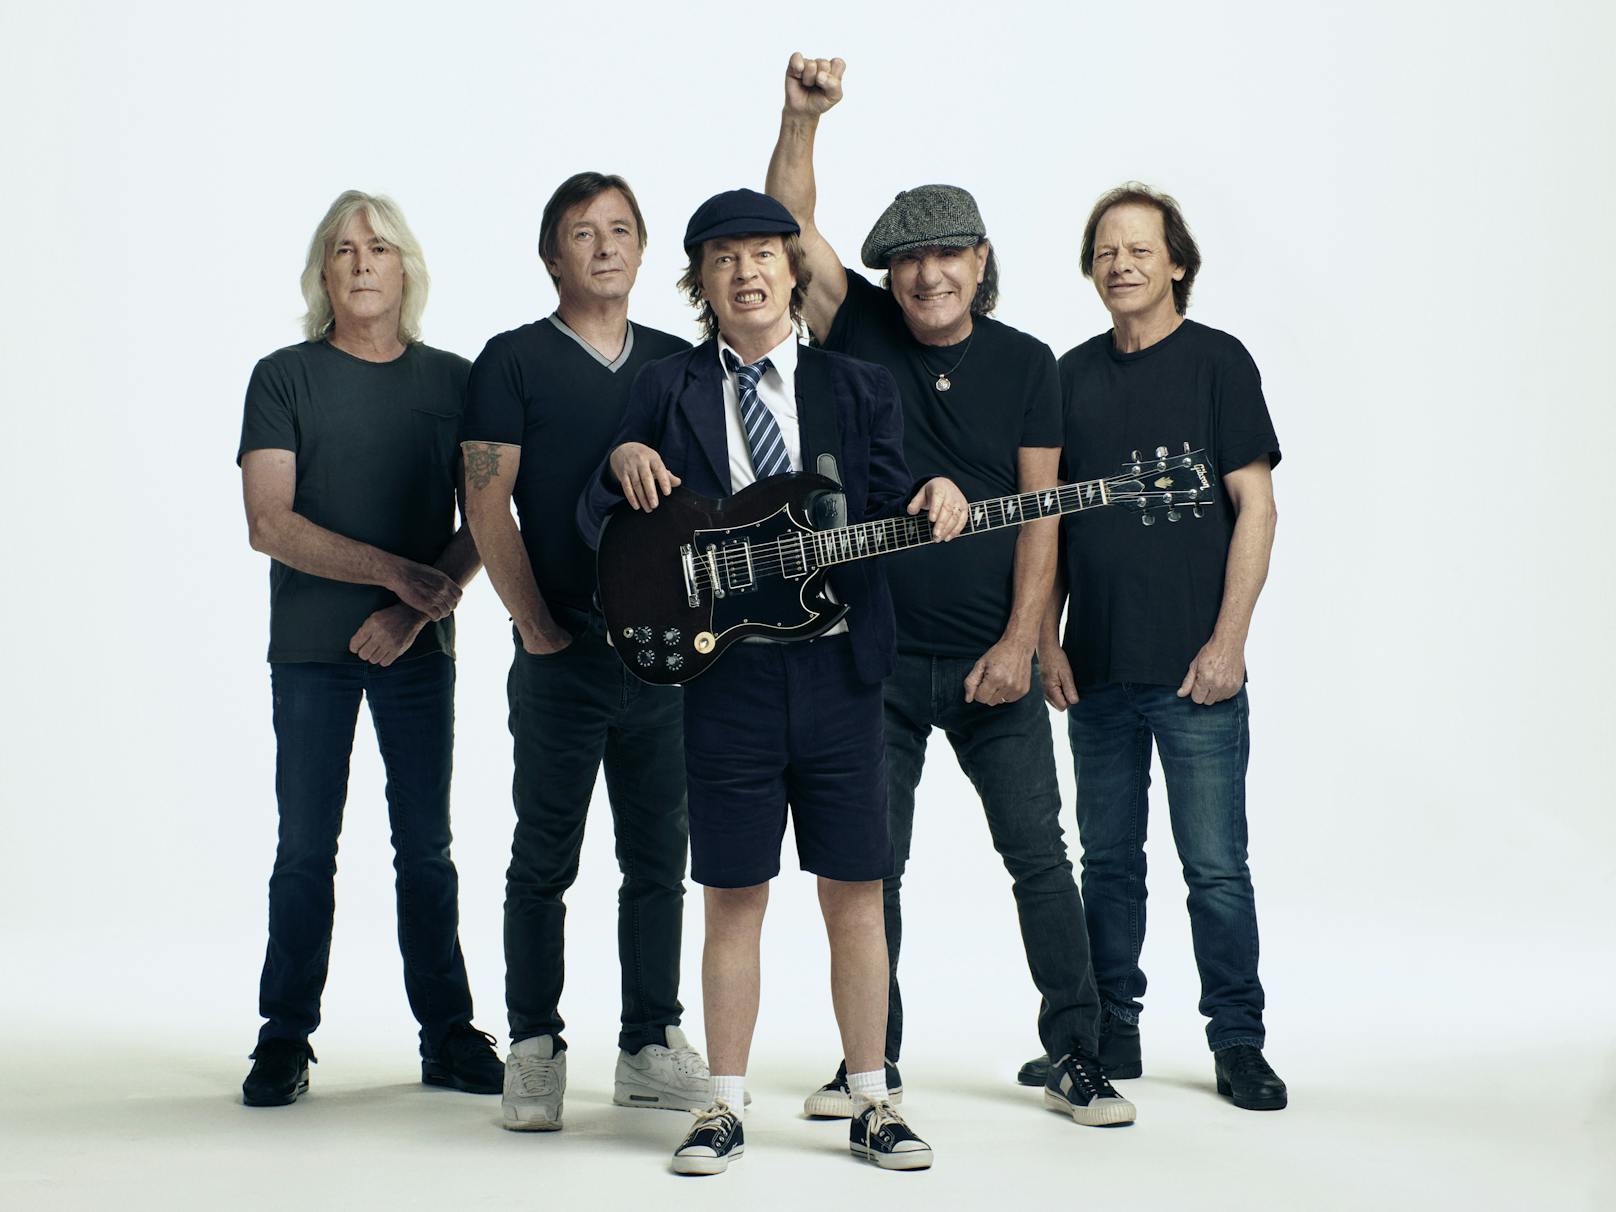 Wer die Band AC/DC mag, wird das siebzehnte Album lieben. 